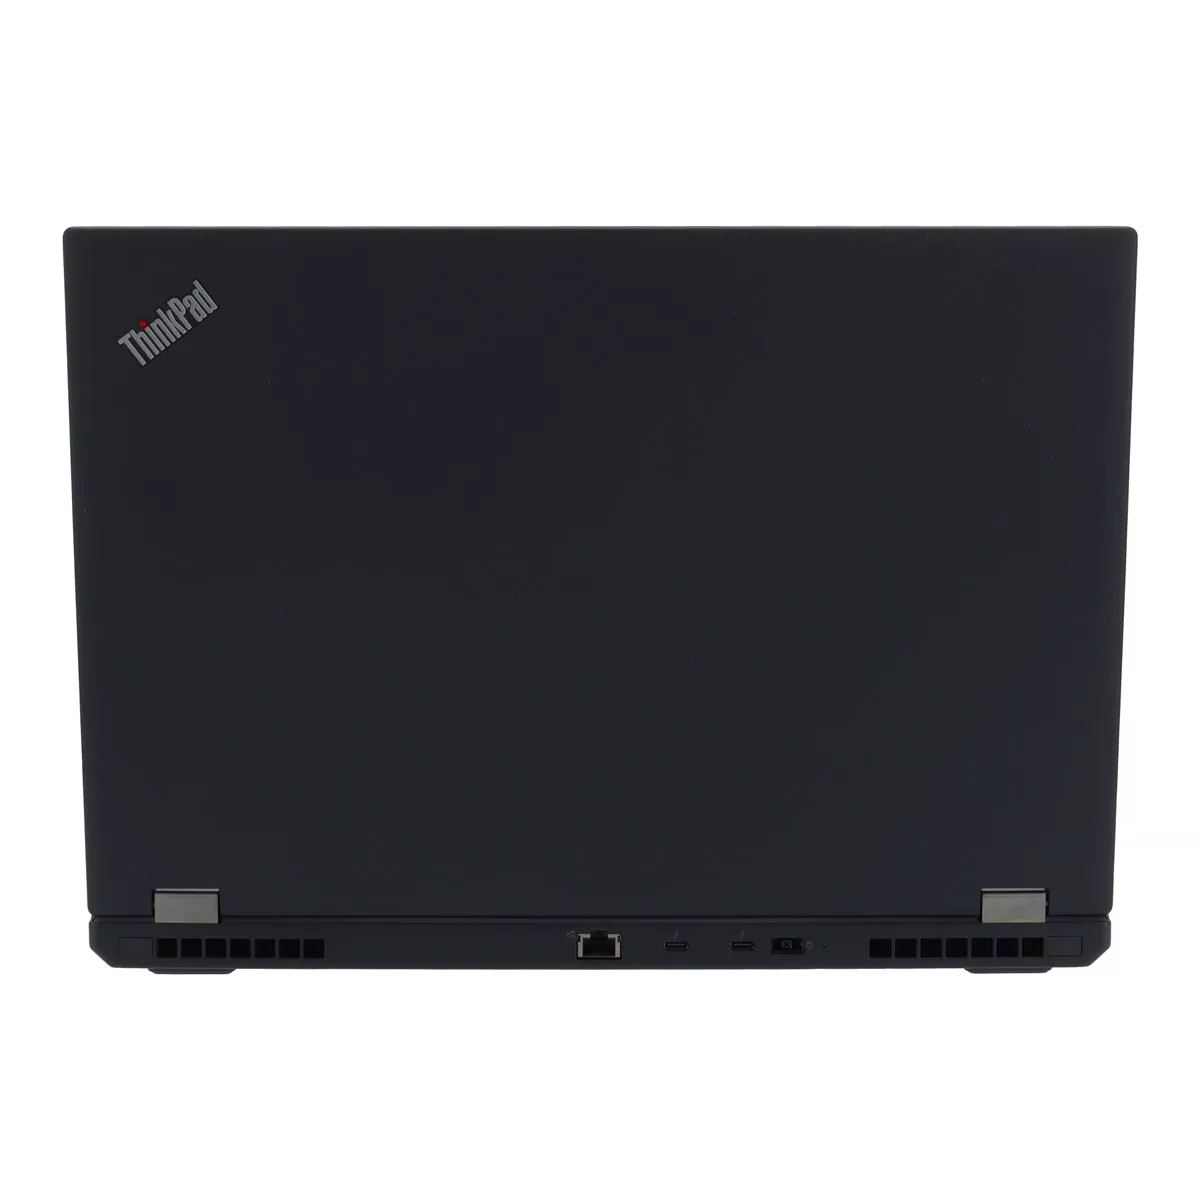 Lenovo ThinkPad P53 Core i7 9750H nVidia Quadro T1000M 32 GB 500 GB M.2 SSD Webcam A